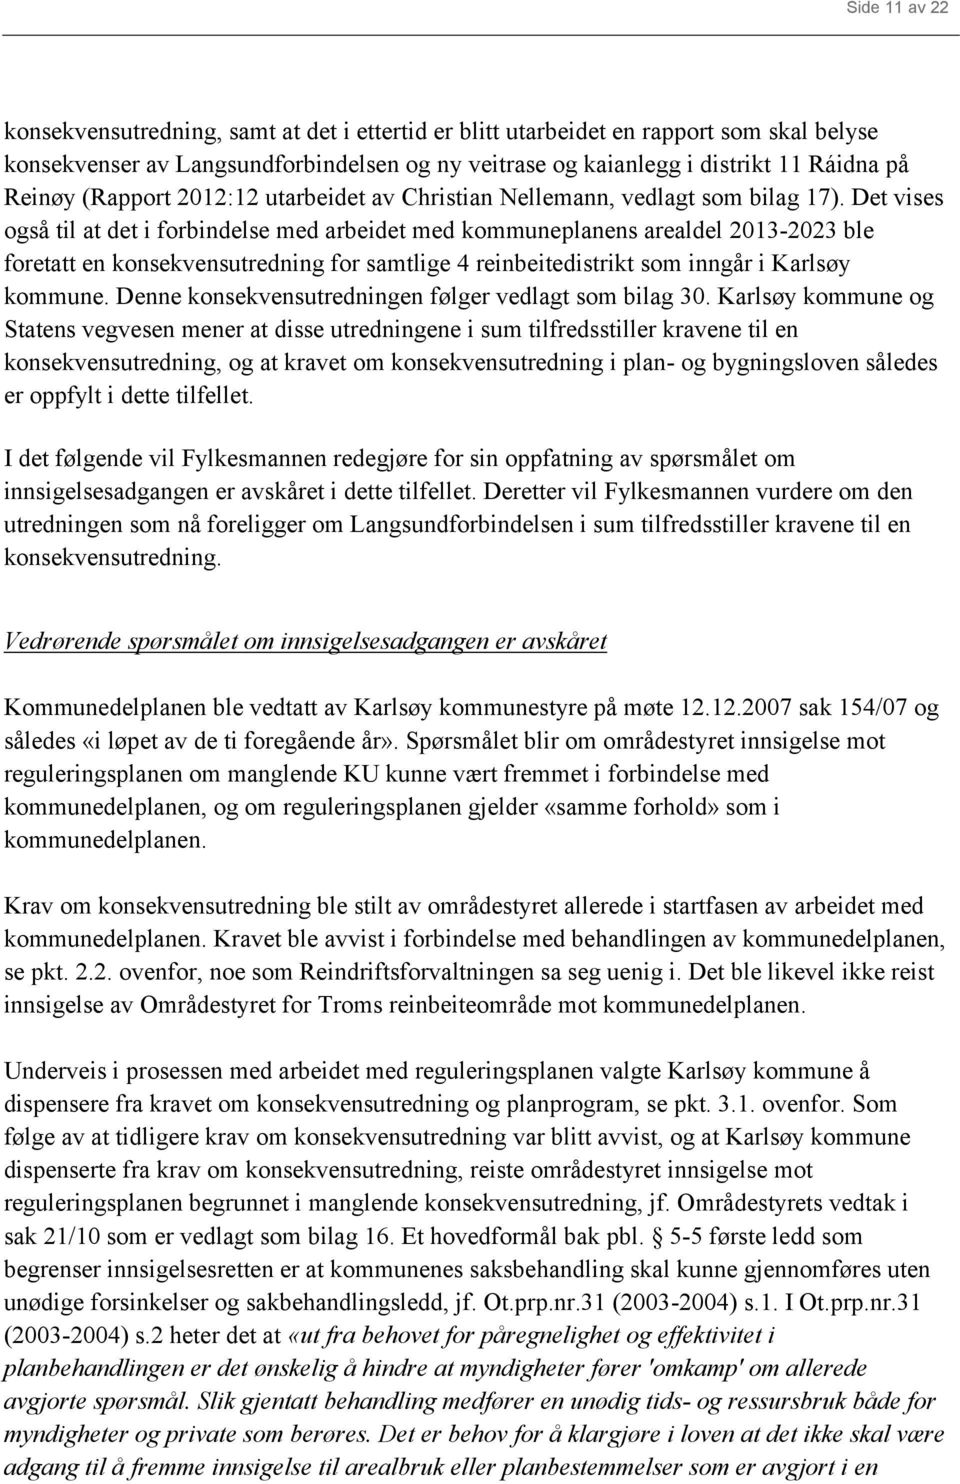 Det vises også til at det i forbindelse med arbeidet med kommuneplanens arealdel 2013-2023 ble foretatt en konsekvensutredning for samtlige 4 reinbeitedistrikt som inngår i Karlsøy kommune.